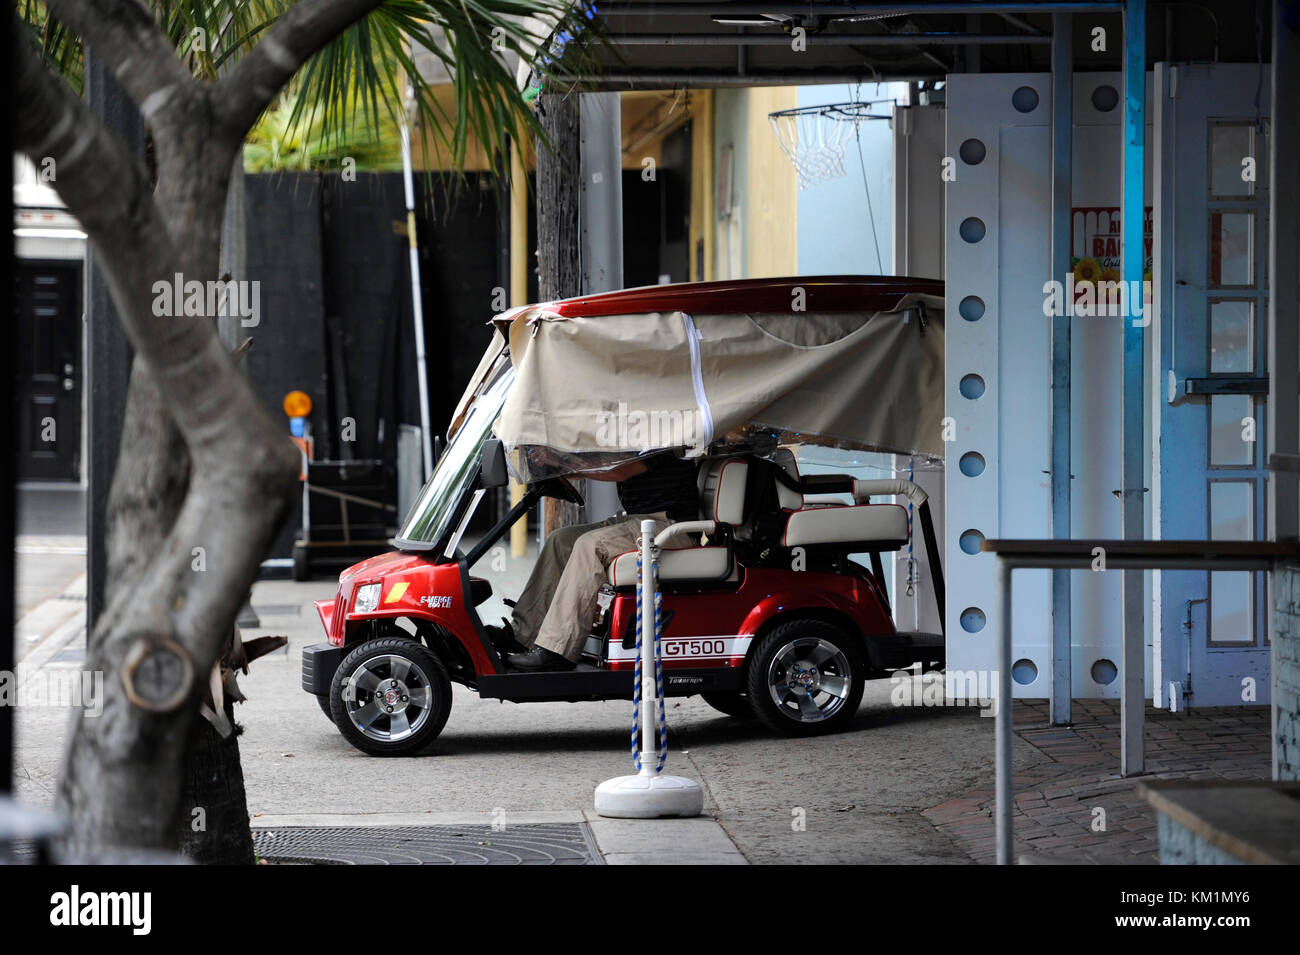 Fort Lauderdale, FL - Juni 18: (exklusive Deckung) Tom Cruise sich weigert, auf dem Set von Rock of Ages fotografiert werden. Kreuzfahrt war um in einem roten Golf Cart (das war alles abgedeckt) und durch die Sicherheit von seinem Anhänger flankiert in der Tür der Club (der war wie 30 Meter entfernt); Fans sagten Tom, sah, auf der anderen Straßenseite lächerlich macht, anstatt zu Fuß. Alle waren sehr enttäuscht, als die einer Liste Schauspieler weigerte sich, Fotos oder Autogramme zu nehmen, nachdem er von Fans und photogs, schrieen' ich gehört, dieser Film ist Strait zu Video' und 'Tom Ich hoffe Sie d Gehechelt war angetrieben Stockfoto